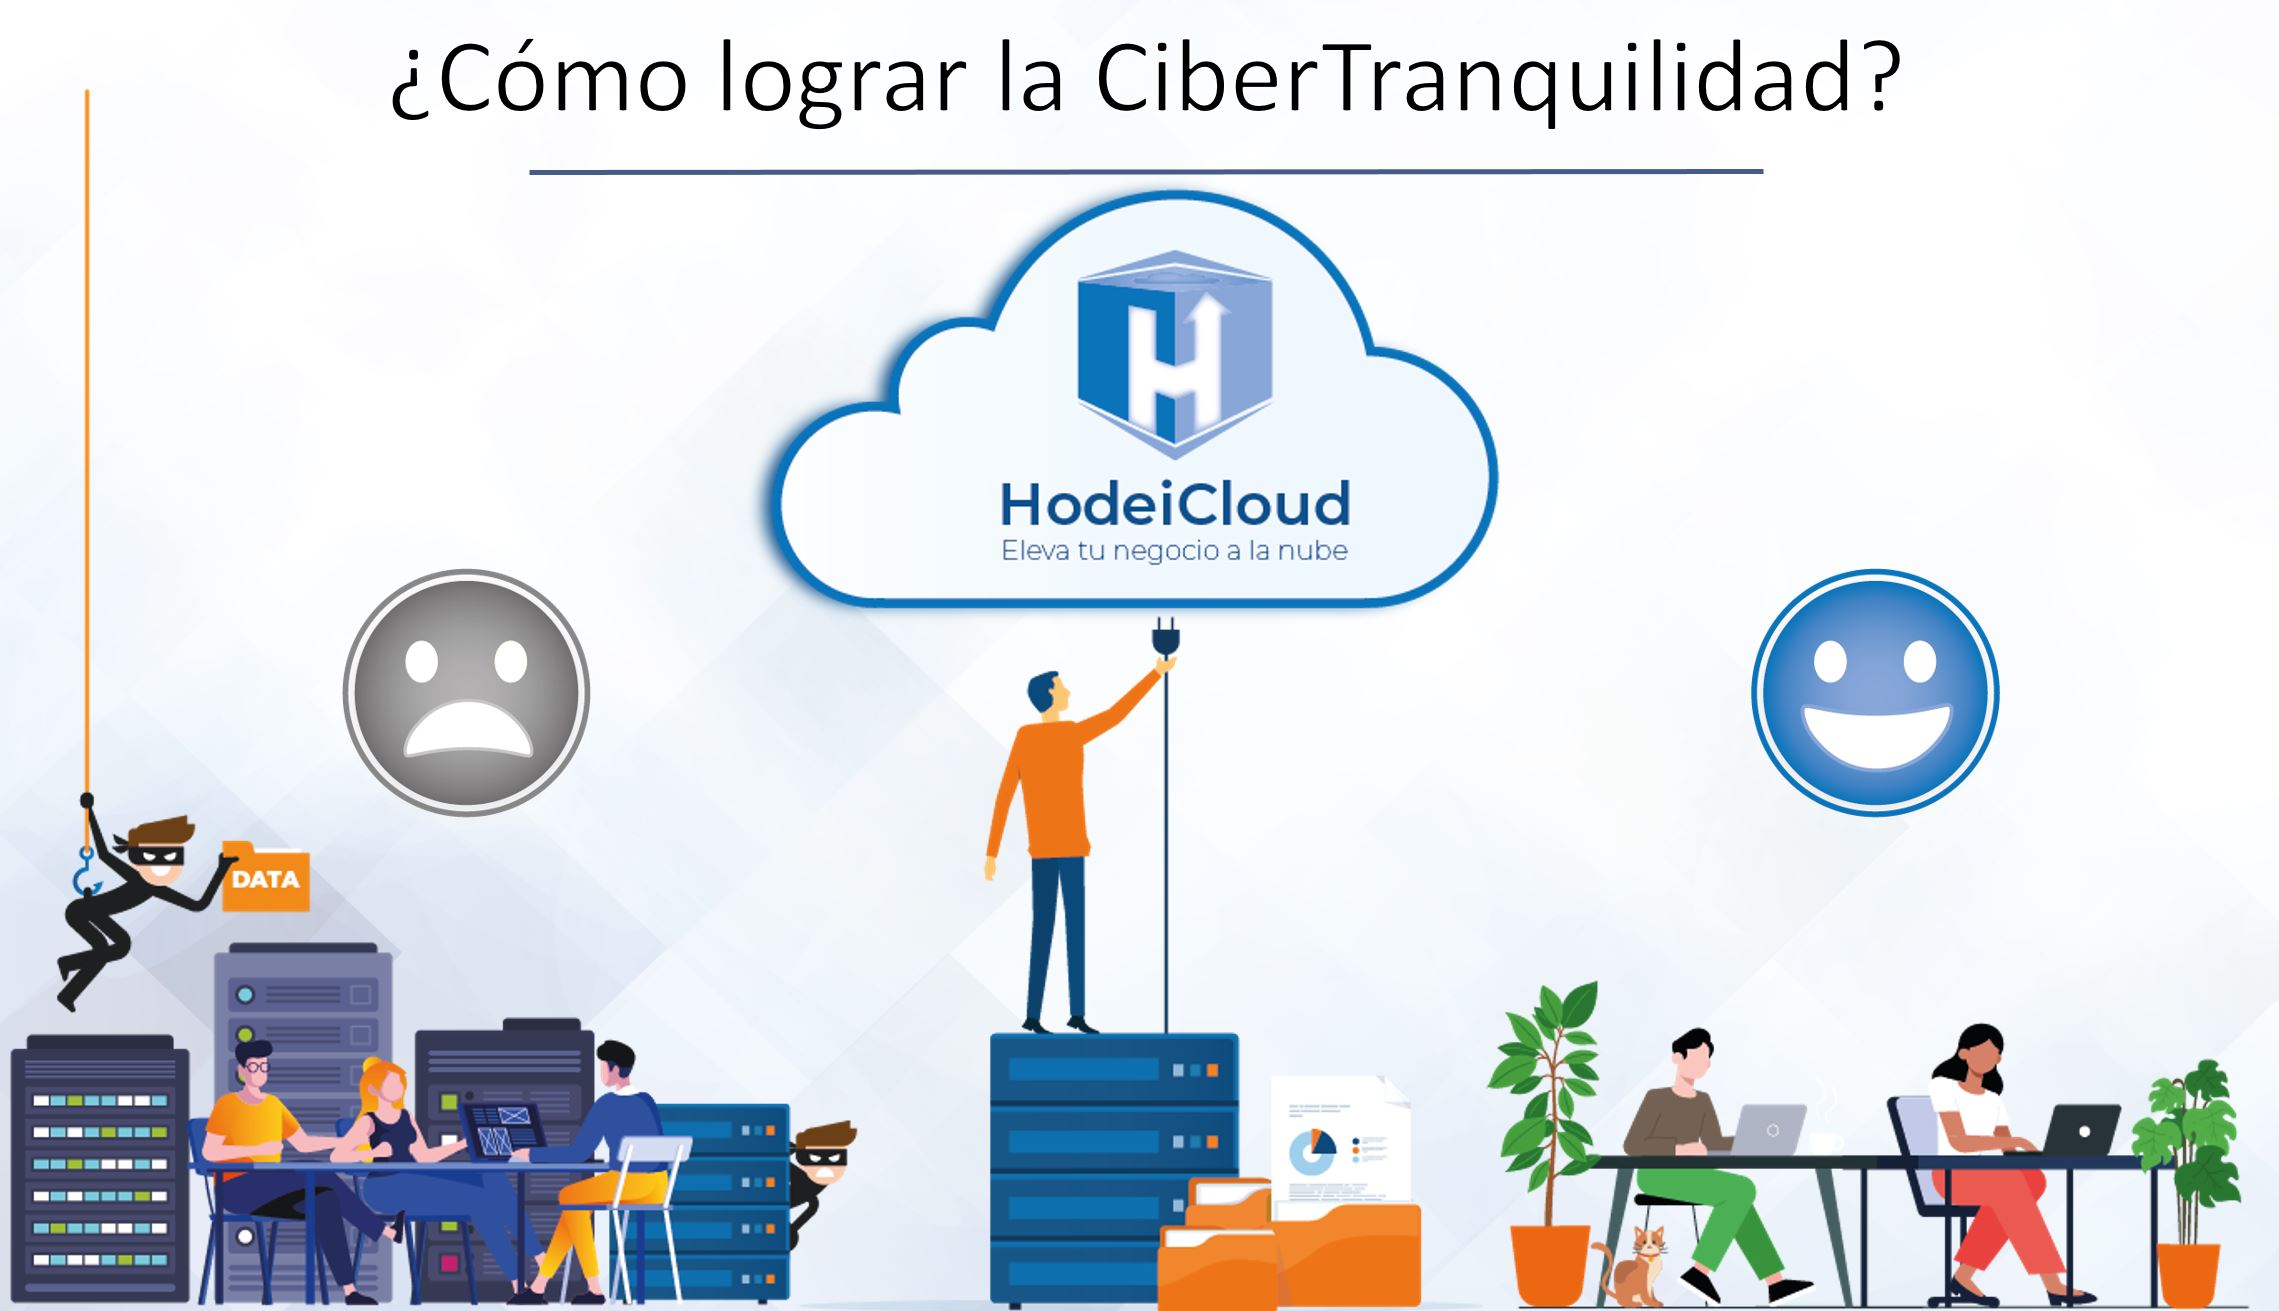 En Hodeicloud trabajamos por y para la CiberTranquilidad de nuestros clientes.